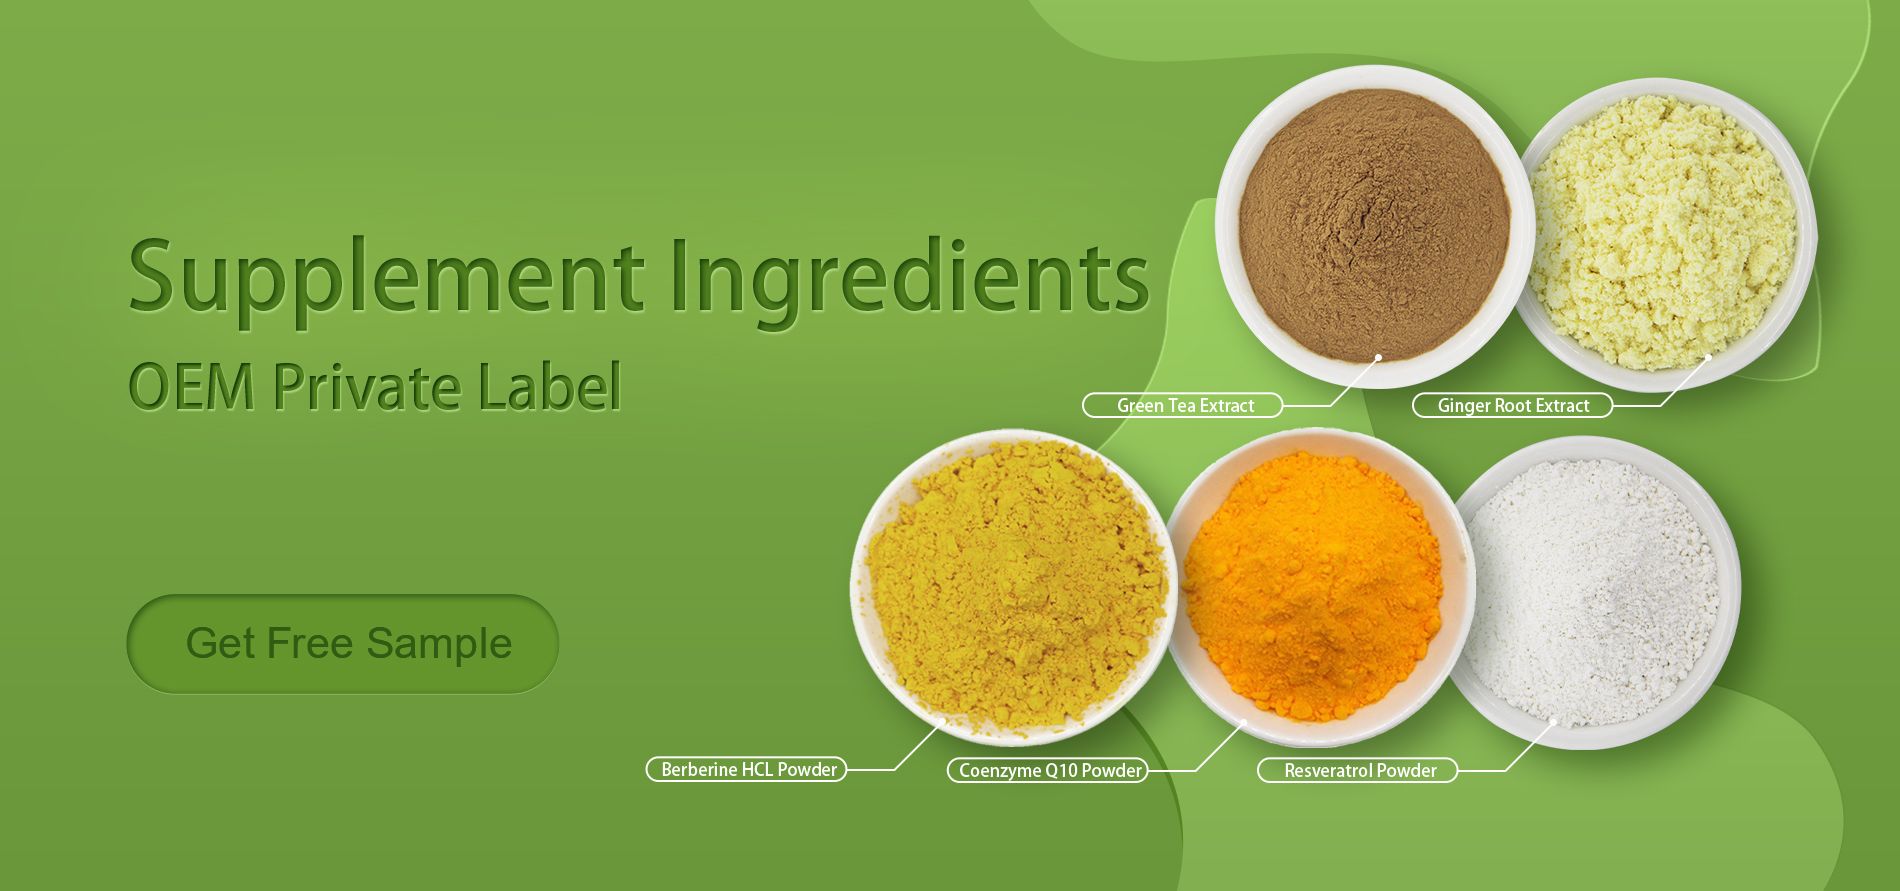 Supplements Ingredients